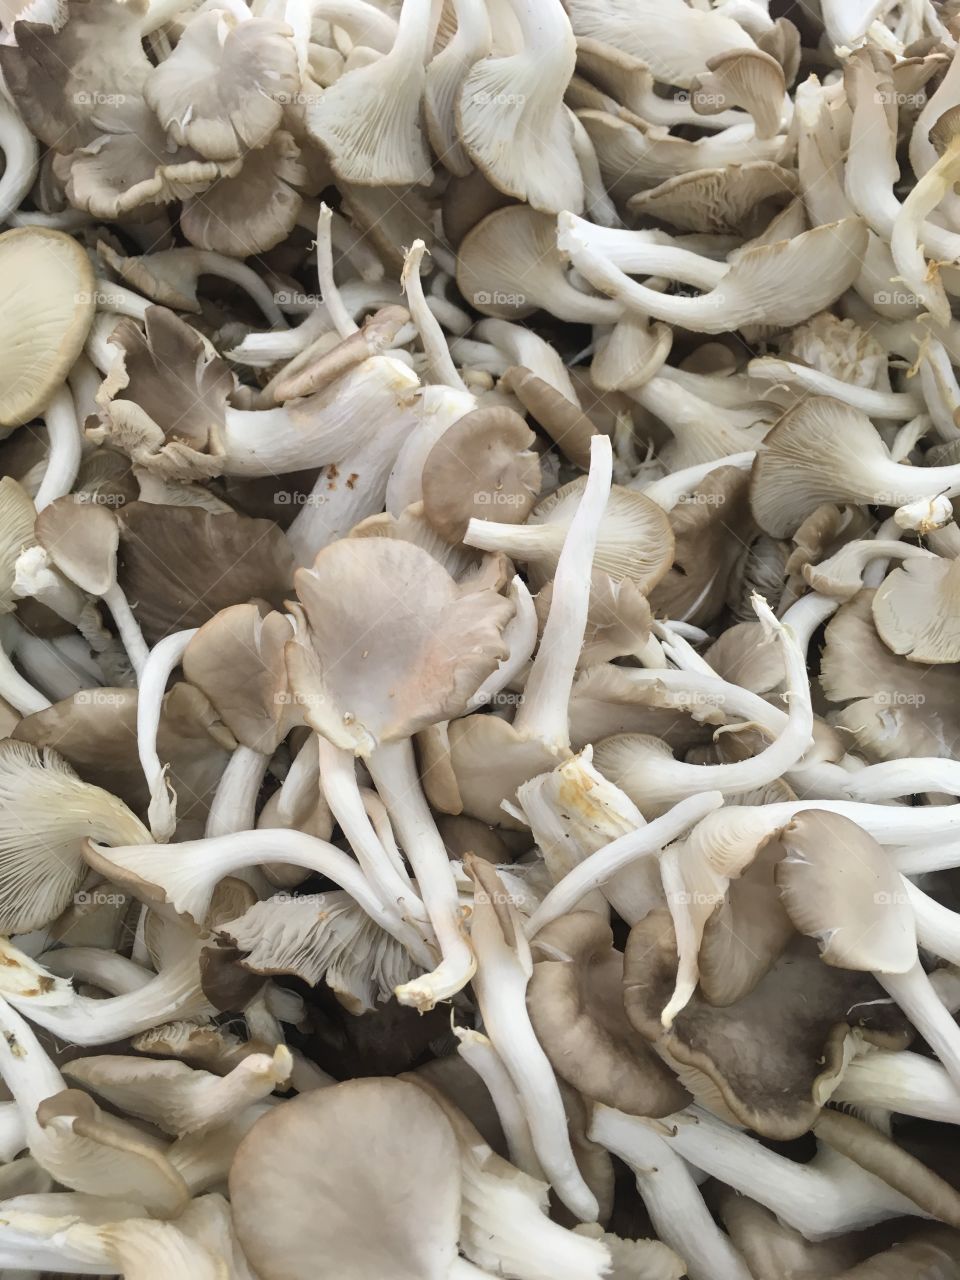 Mushroom on thai market